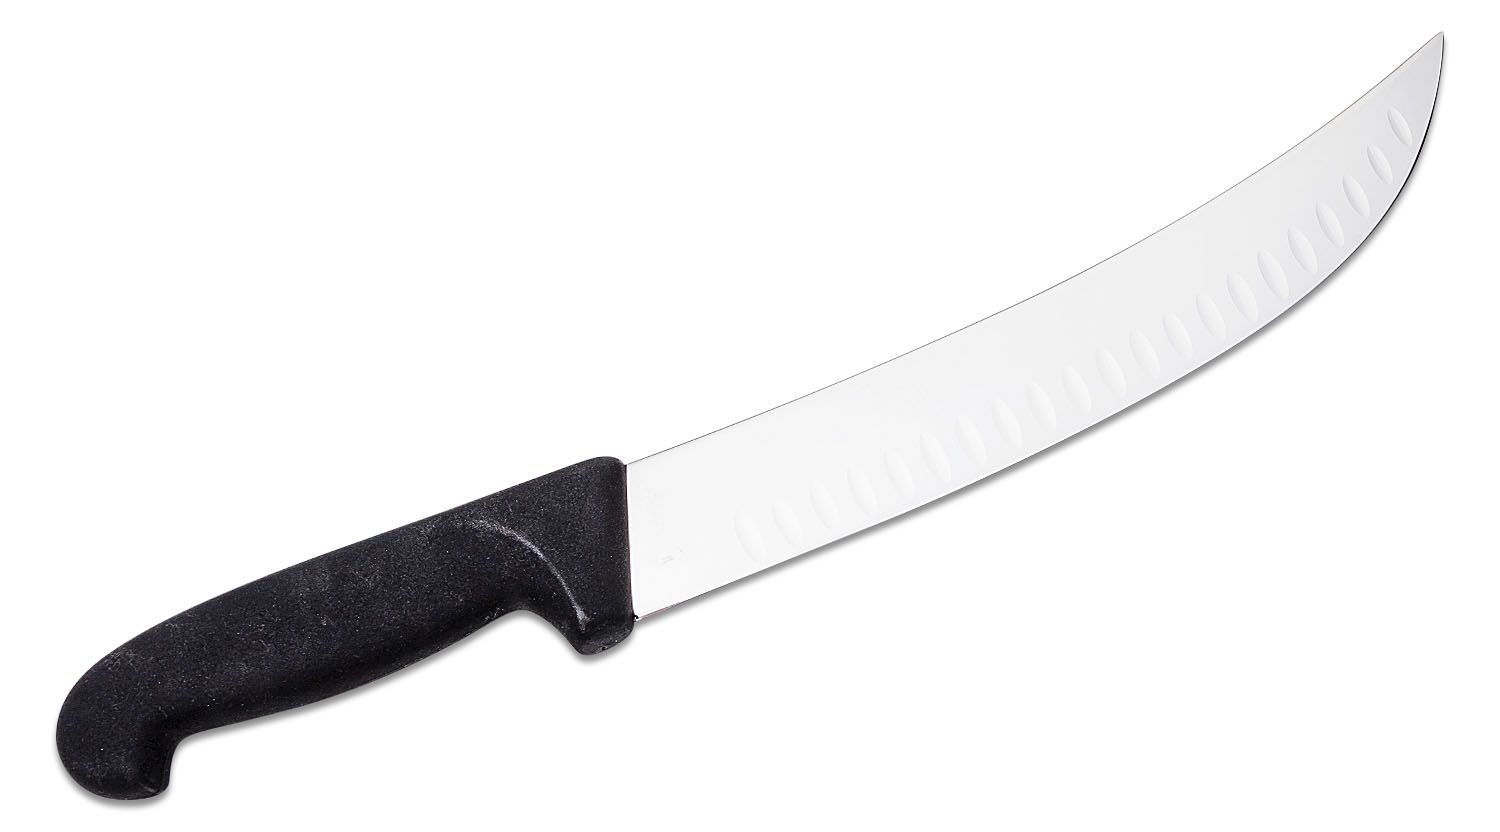 Forschner 10 Cimeter Knife For Butchering Meat And Tuna - Melton Tackle